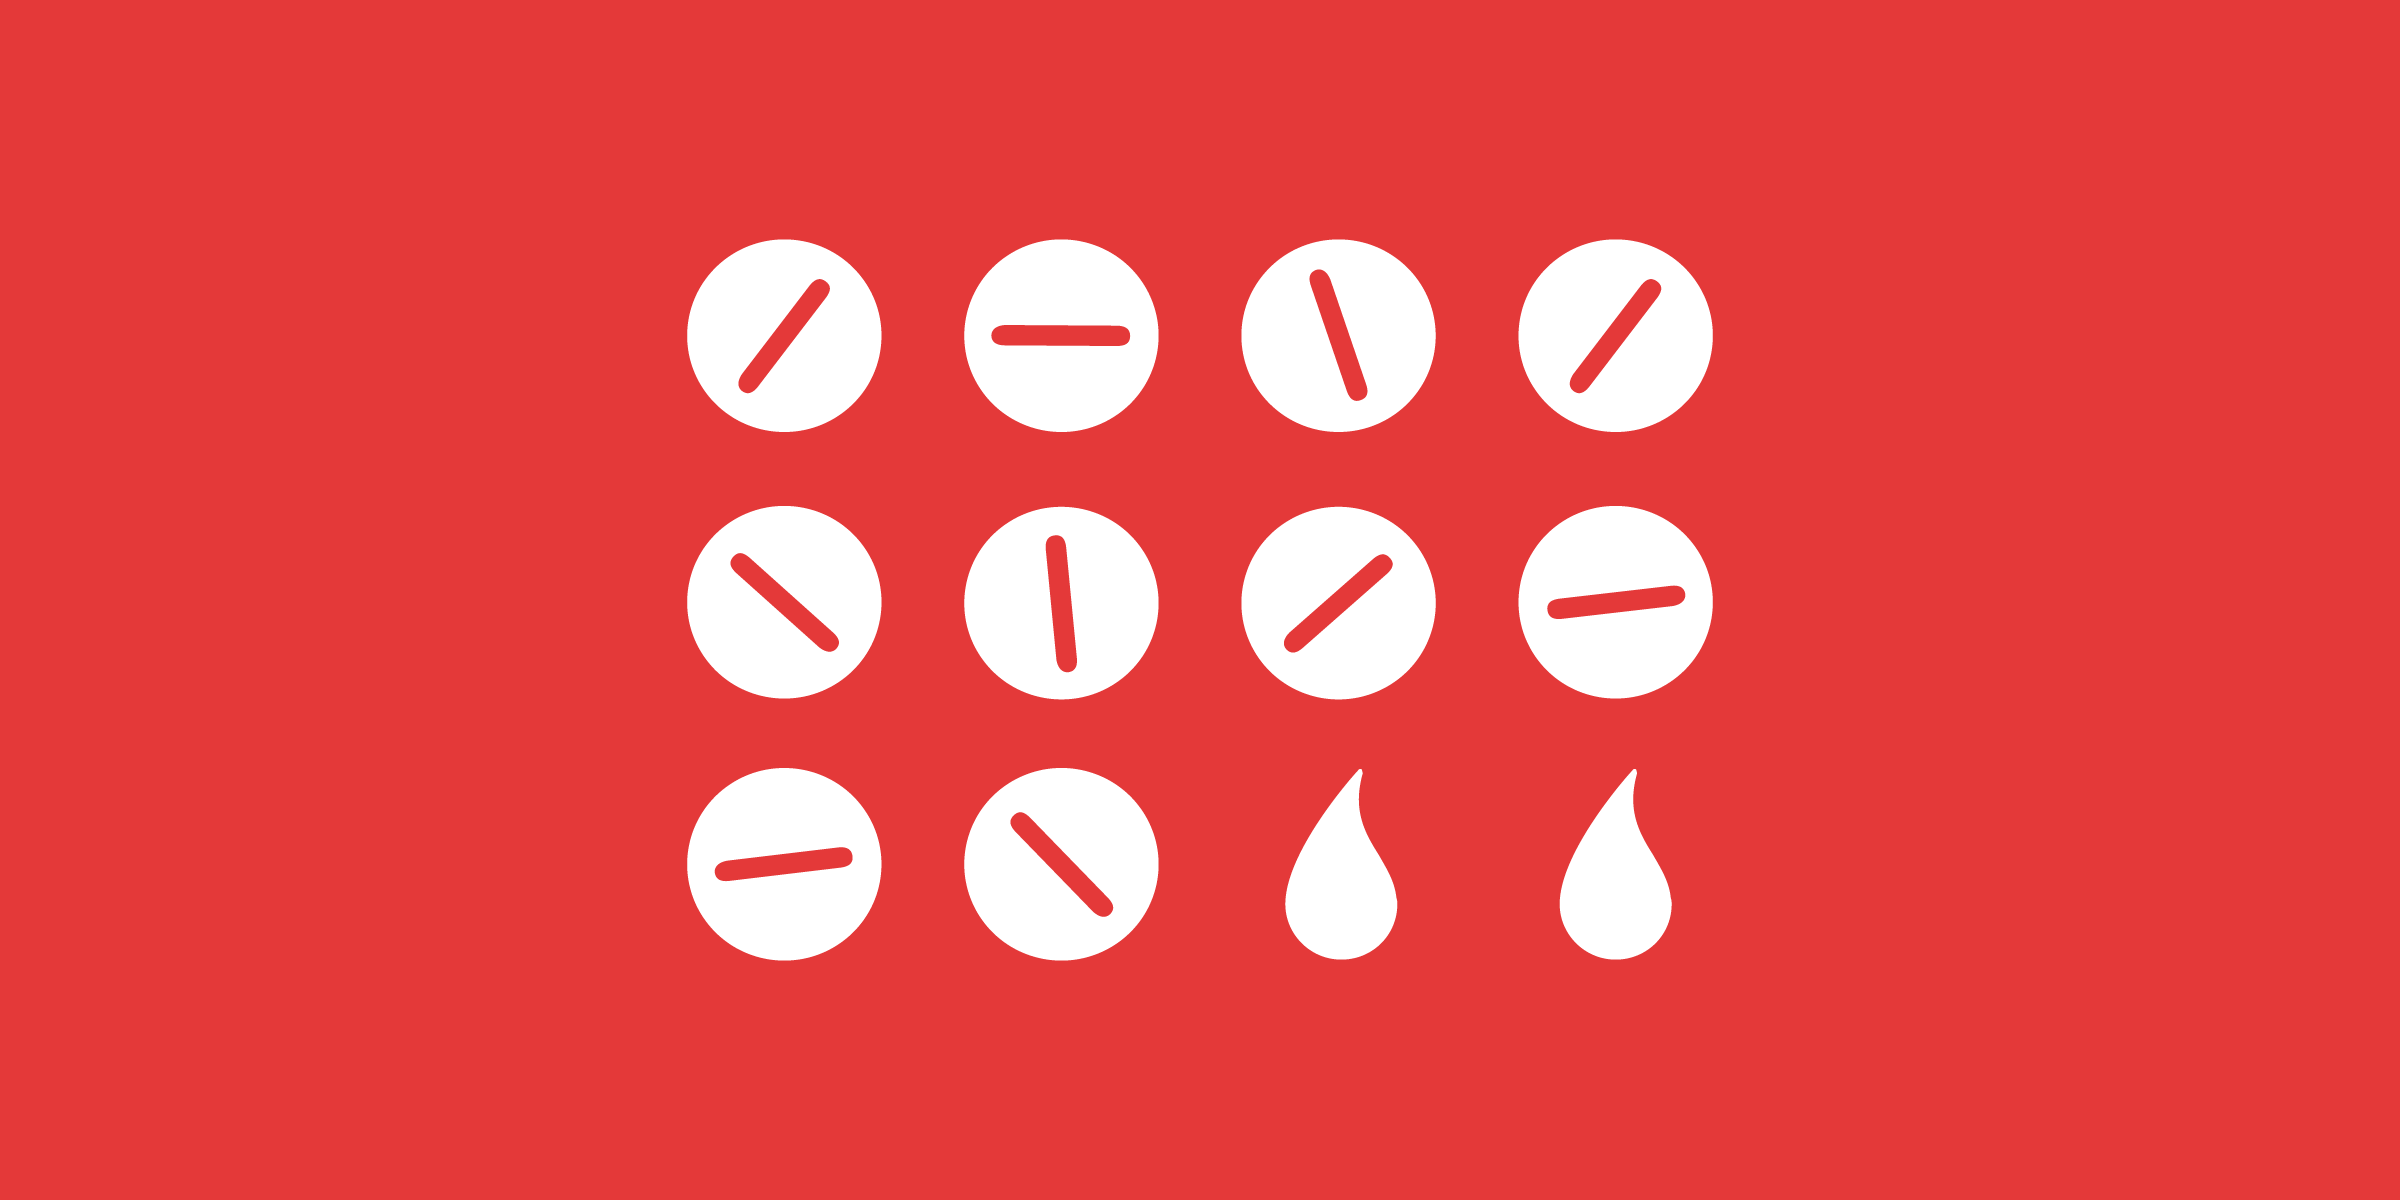 pílulas anticoncepcionais ilustradas em vermelho